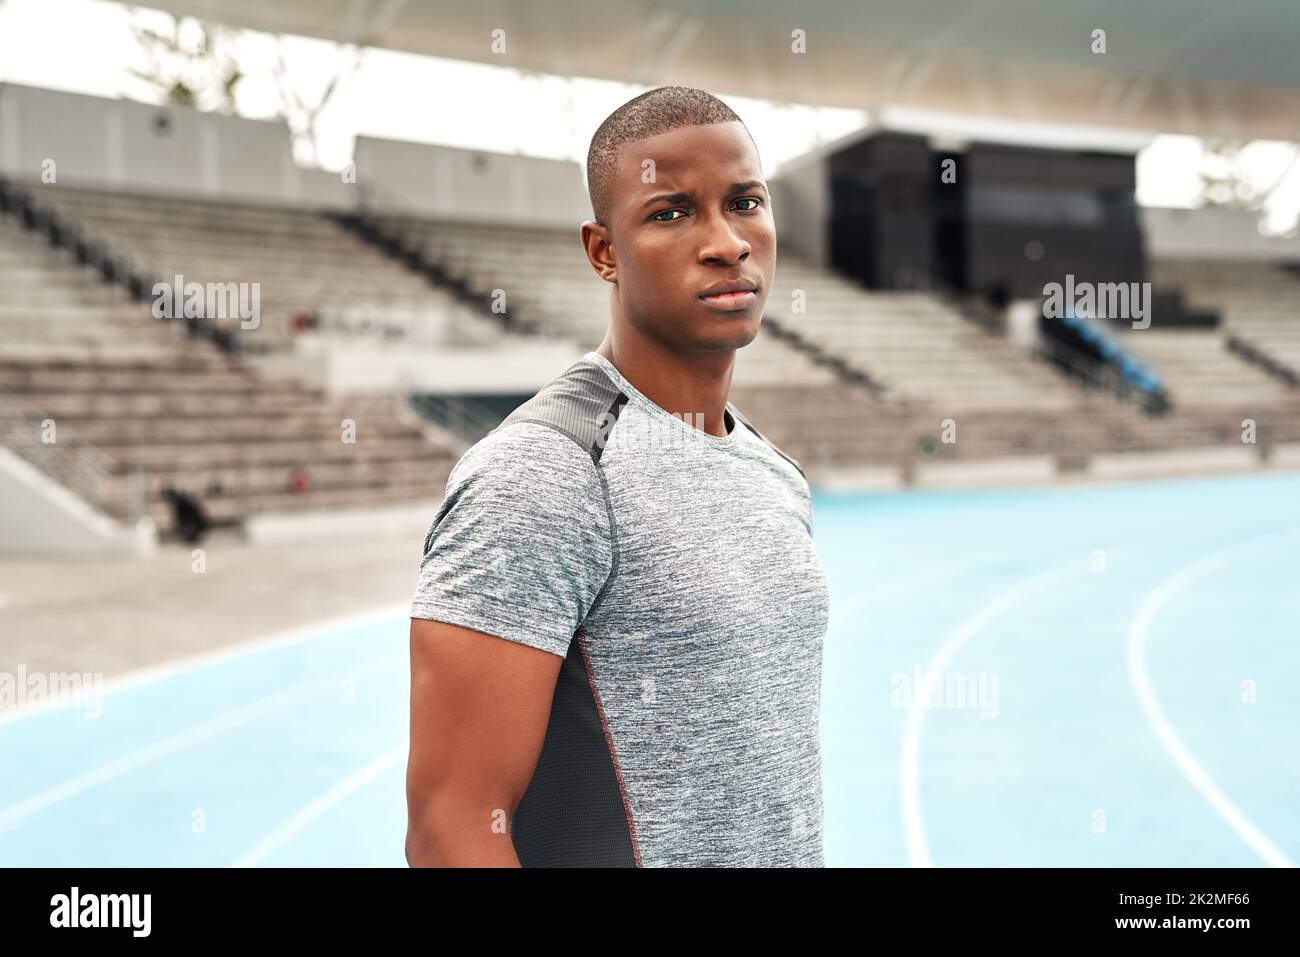 Wage es, mich herauszufordern. Beschnittenes Porträt eines hübschen jungen Sportlers, der allein steht, bevor er auf einem Sportfeld läuft. Stockfoto